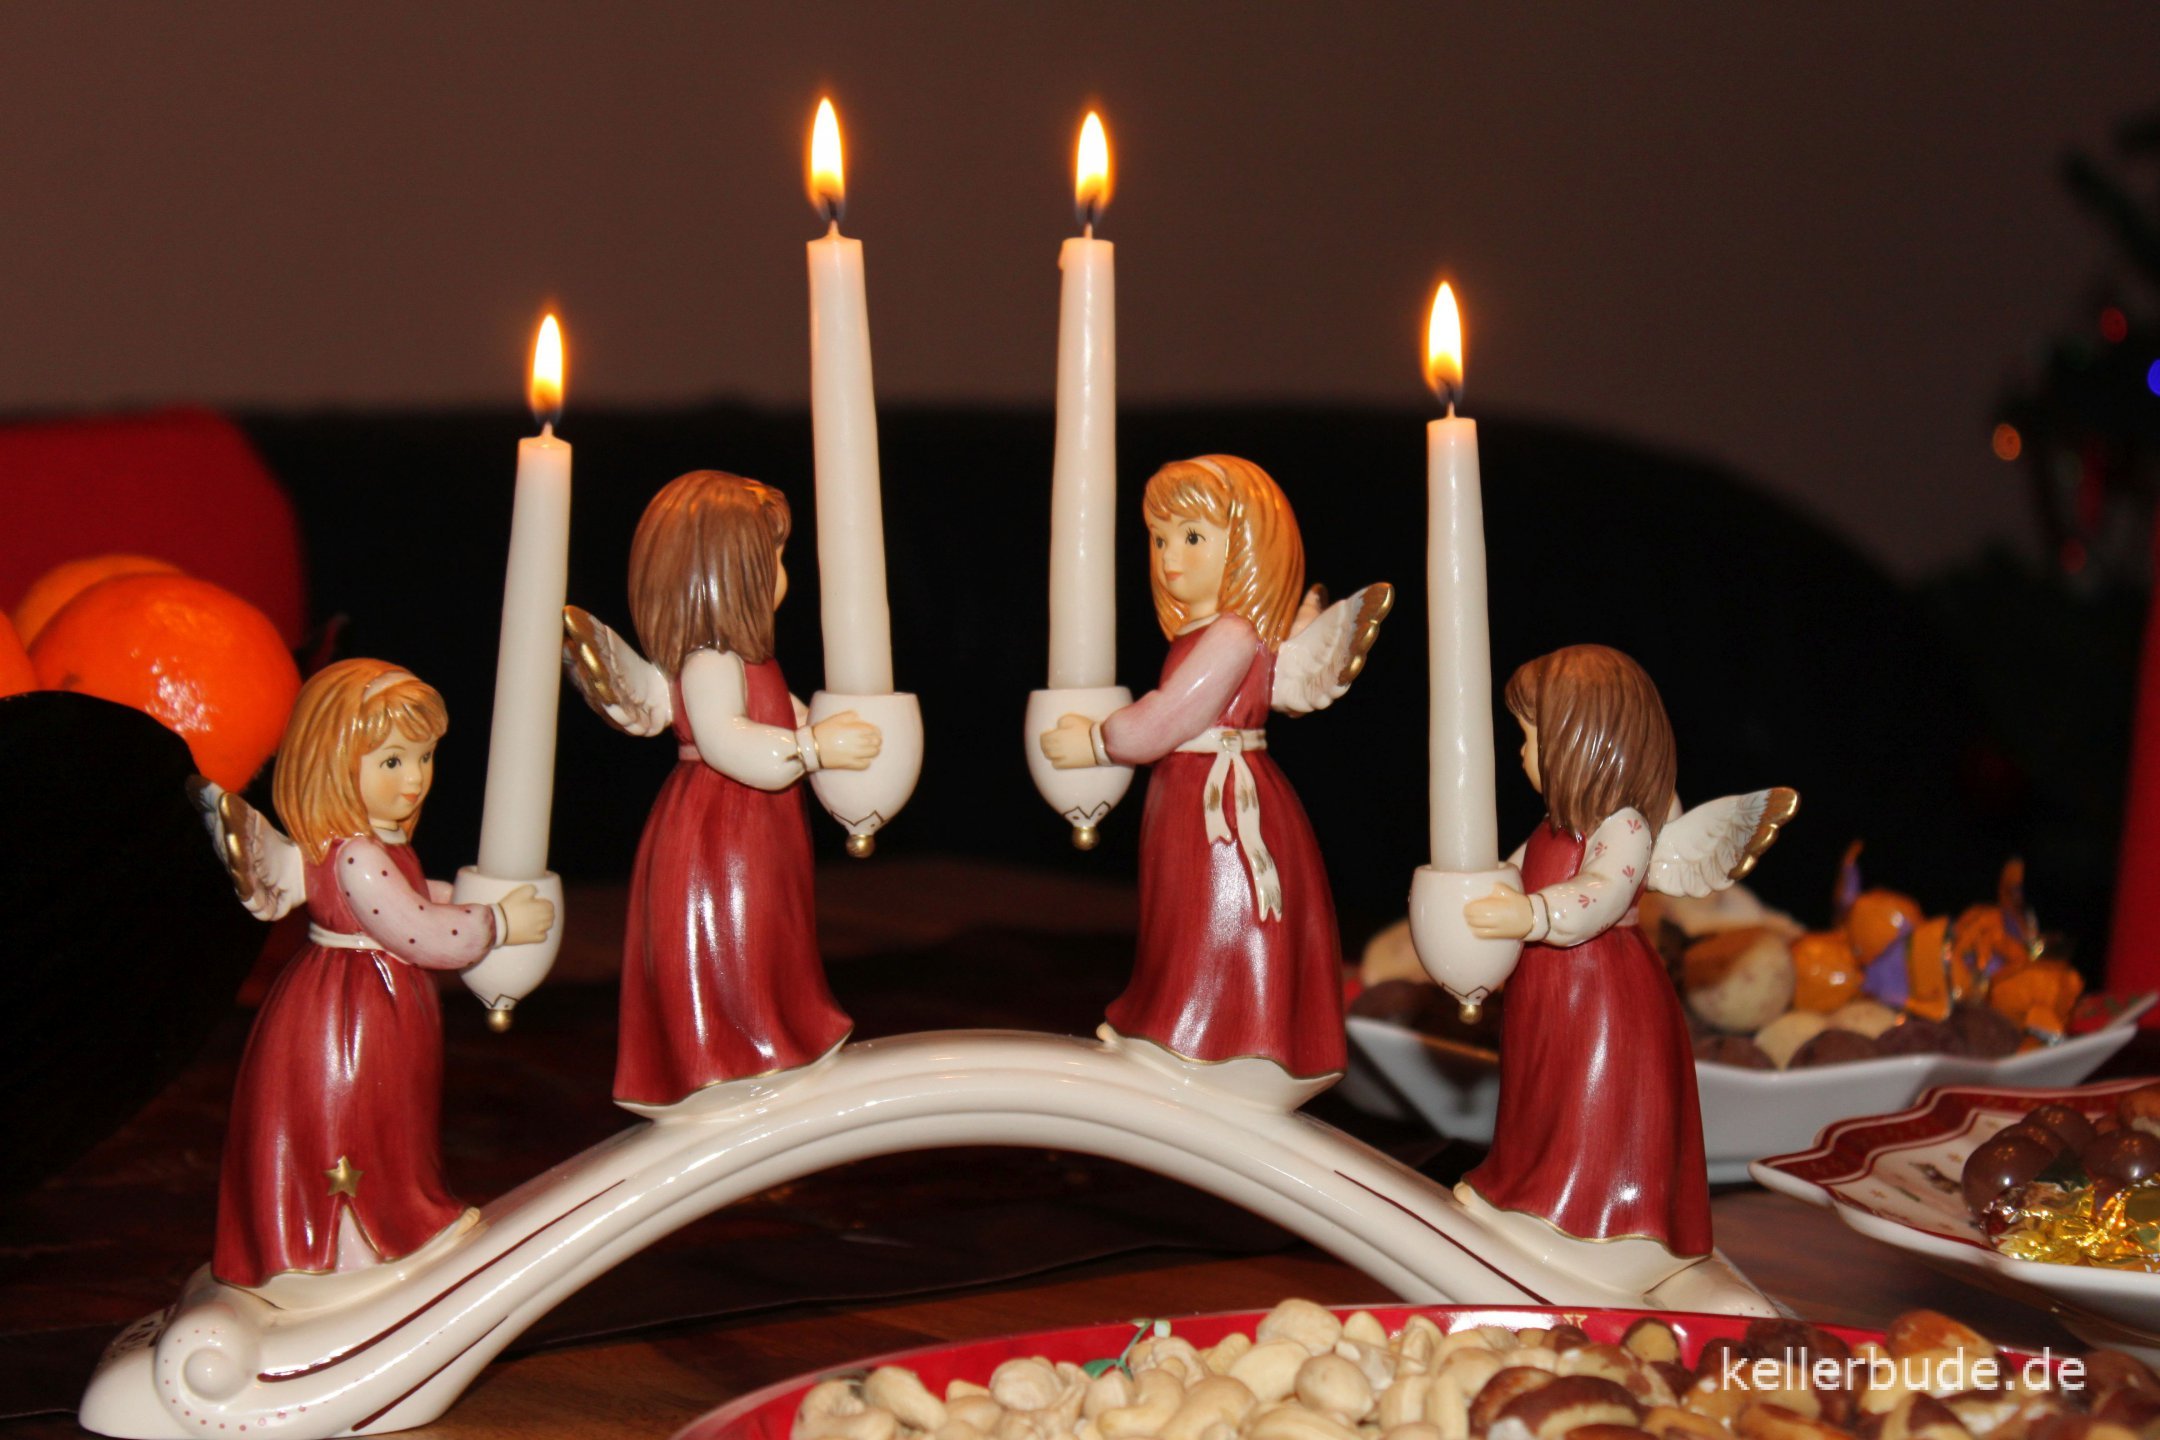 Advent, Advent, ein Lichtlein brennt!Erst eins, dann zwei, dann drei, dann vier.Dann steht das Christkind vor der Tür.